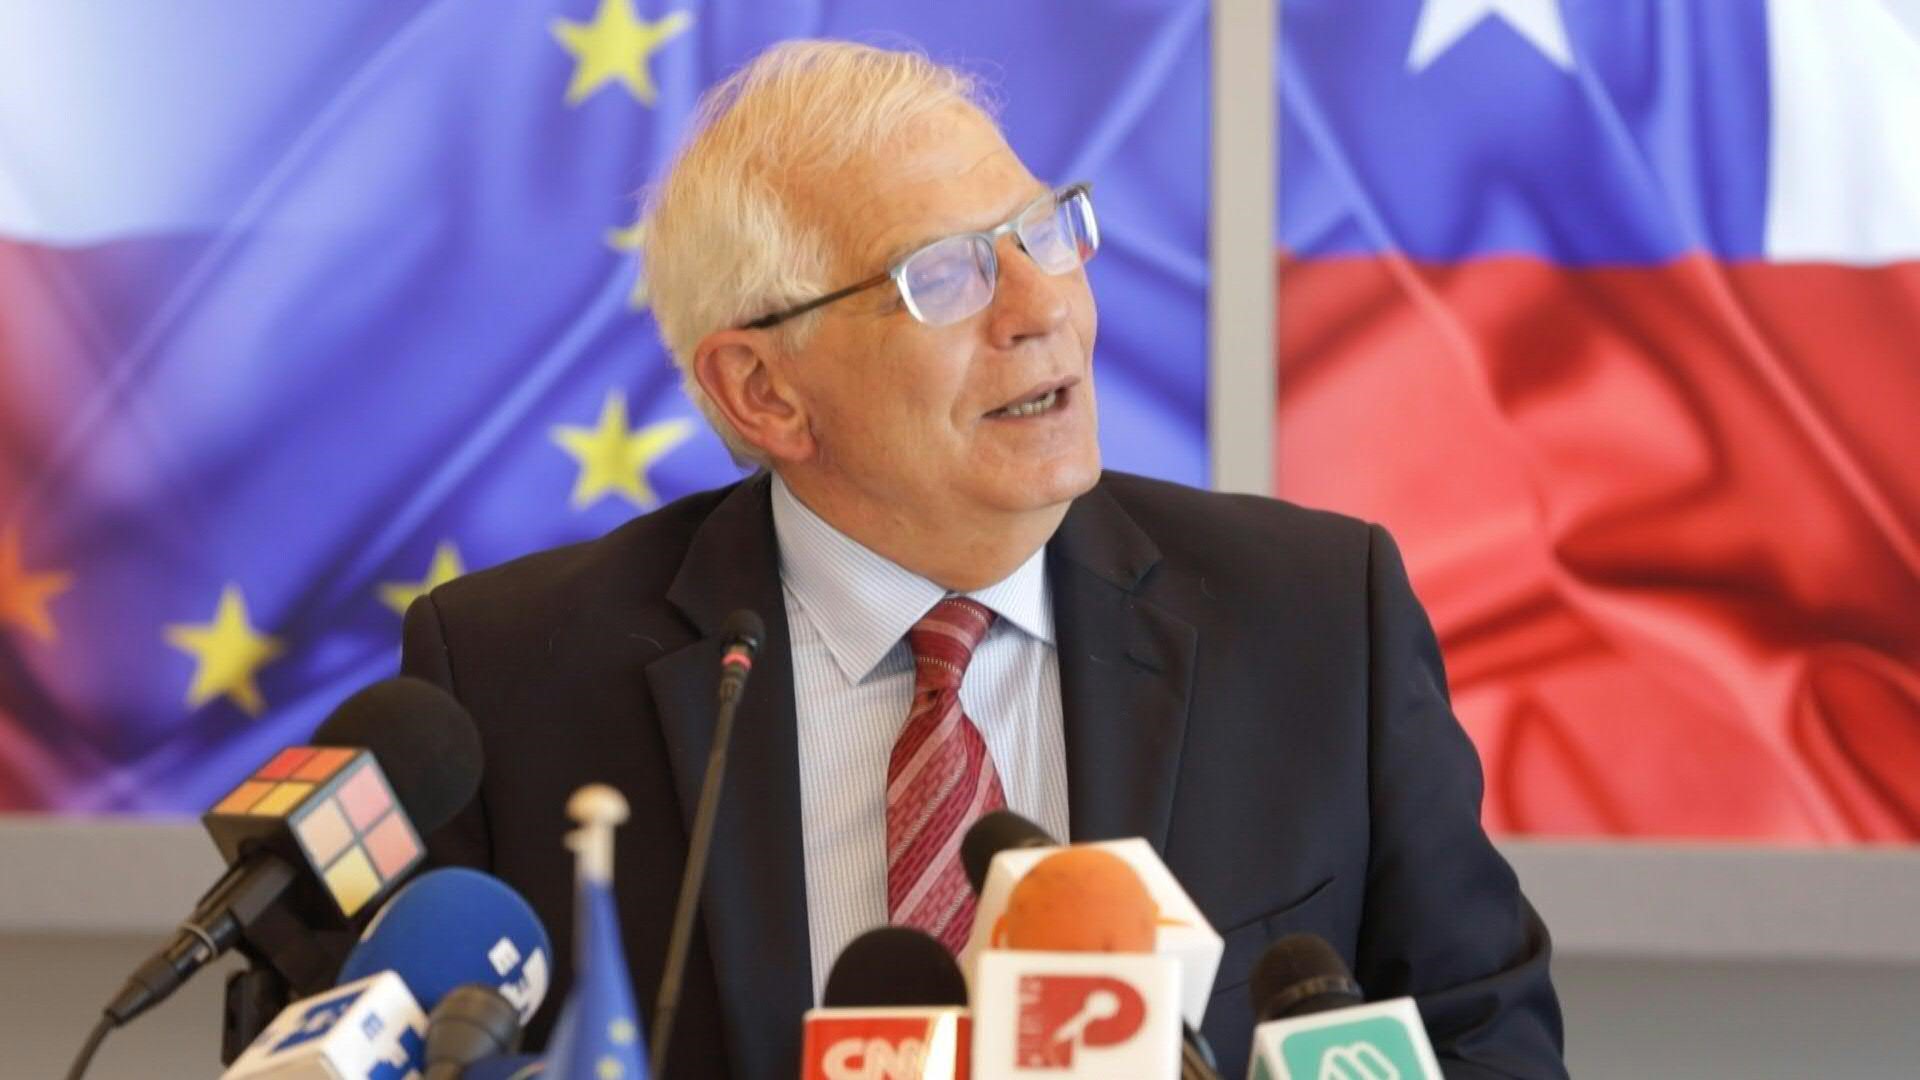 Europa tiene la capacidad de sustituir el gas que le provee Rusia, dijo en Chile el jueves Josep Borrell, jefe de la diplomacia europea, tras el corte del combustible que el gigante energético estatal ruso Gazprom concretó el miércoles a Polonia y Bulgaria.